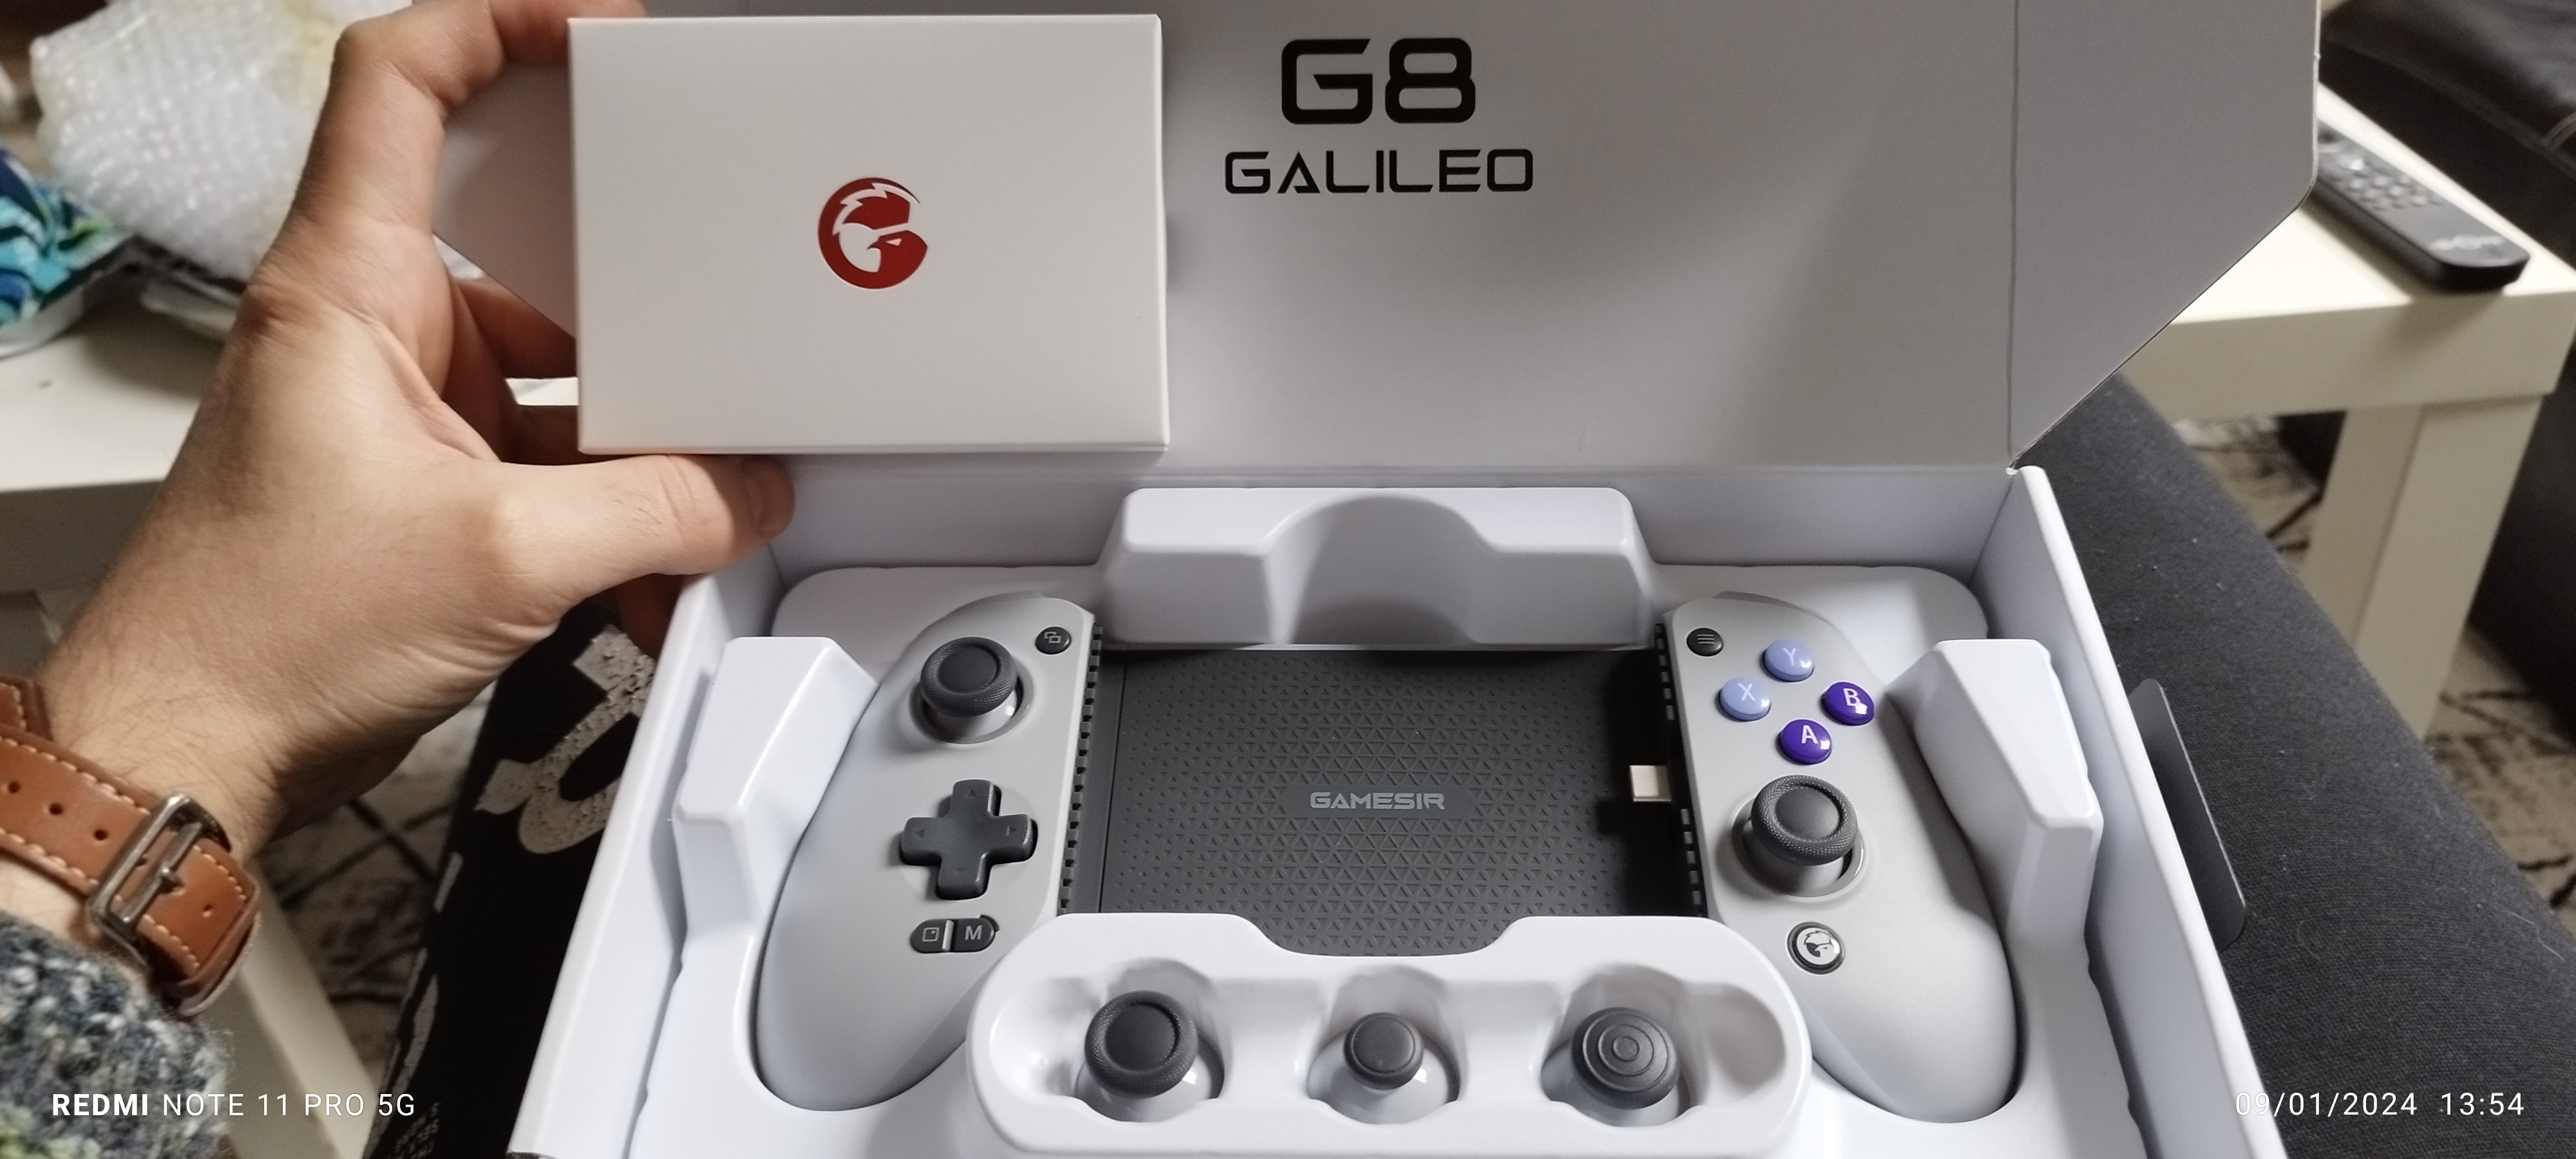 Gamesir G8 Galileo: características, especificaciones y precios